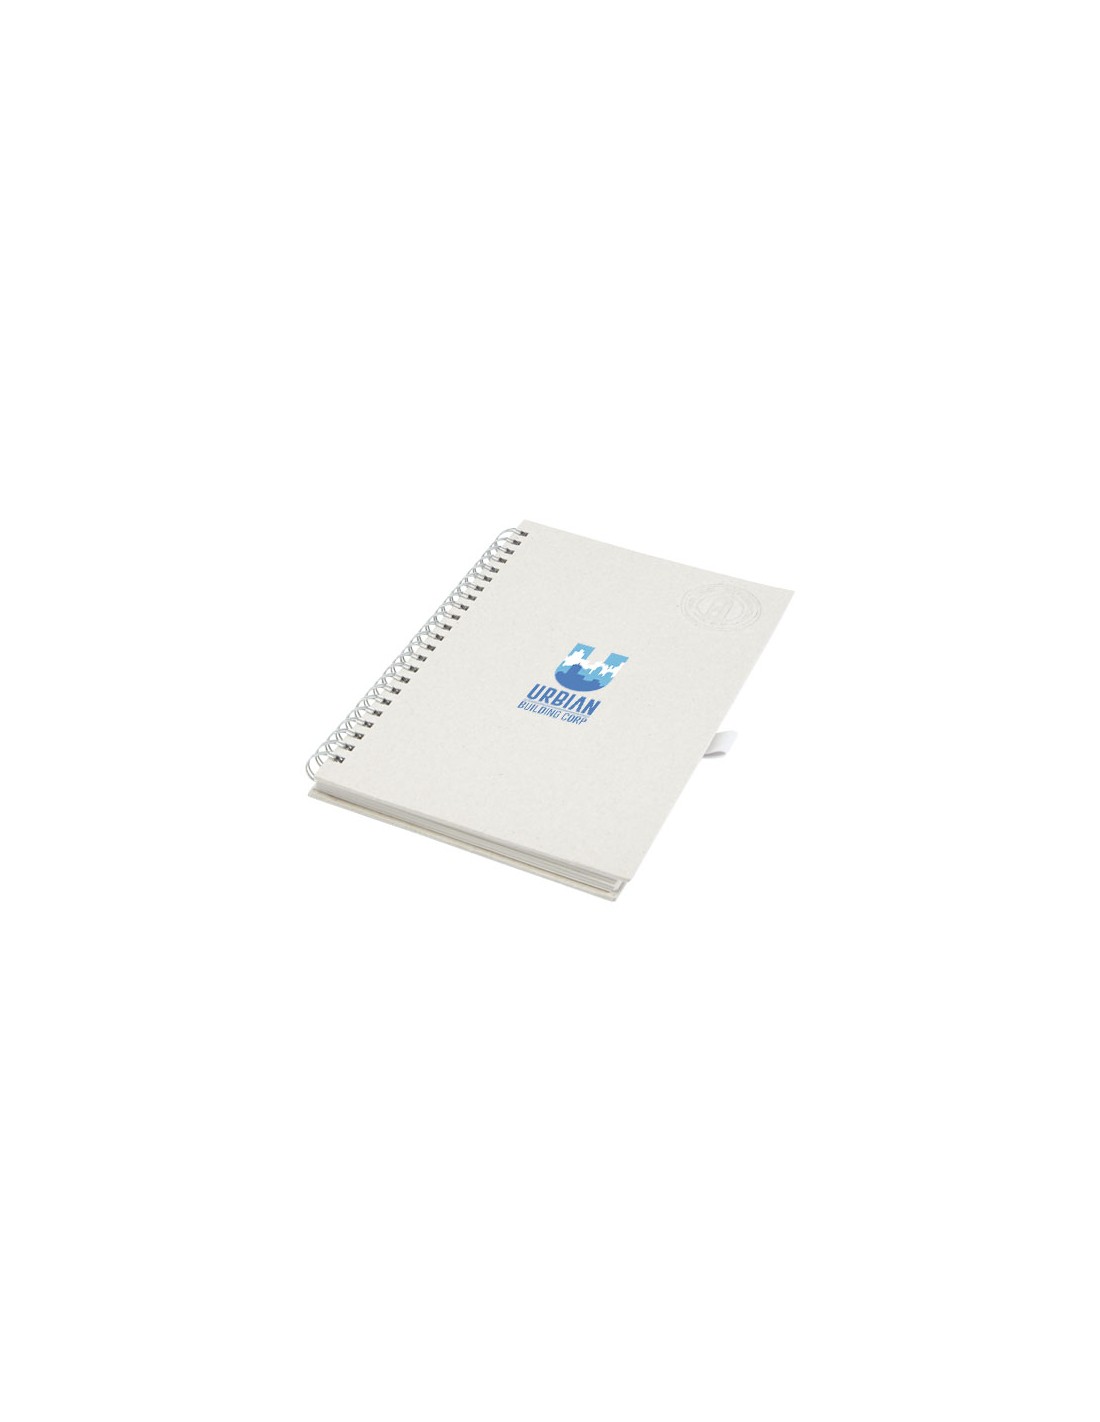 Ensemble carnet de notes format A5 et stylo bille, à partir de briques de  lait recyclées, Dairy Dream - Samdam